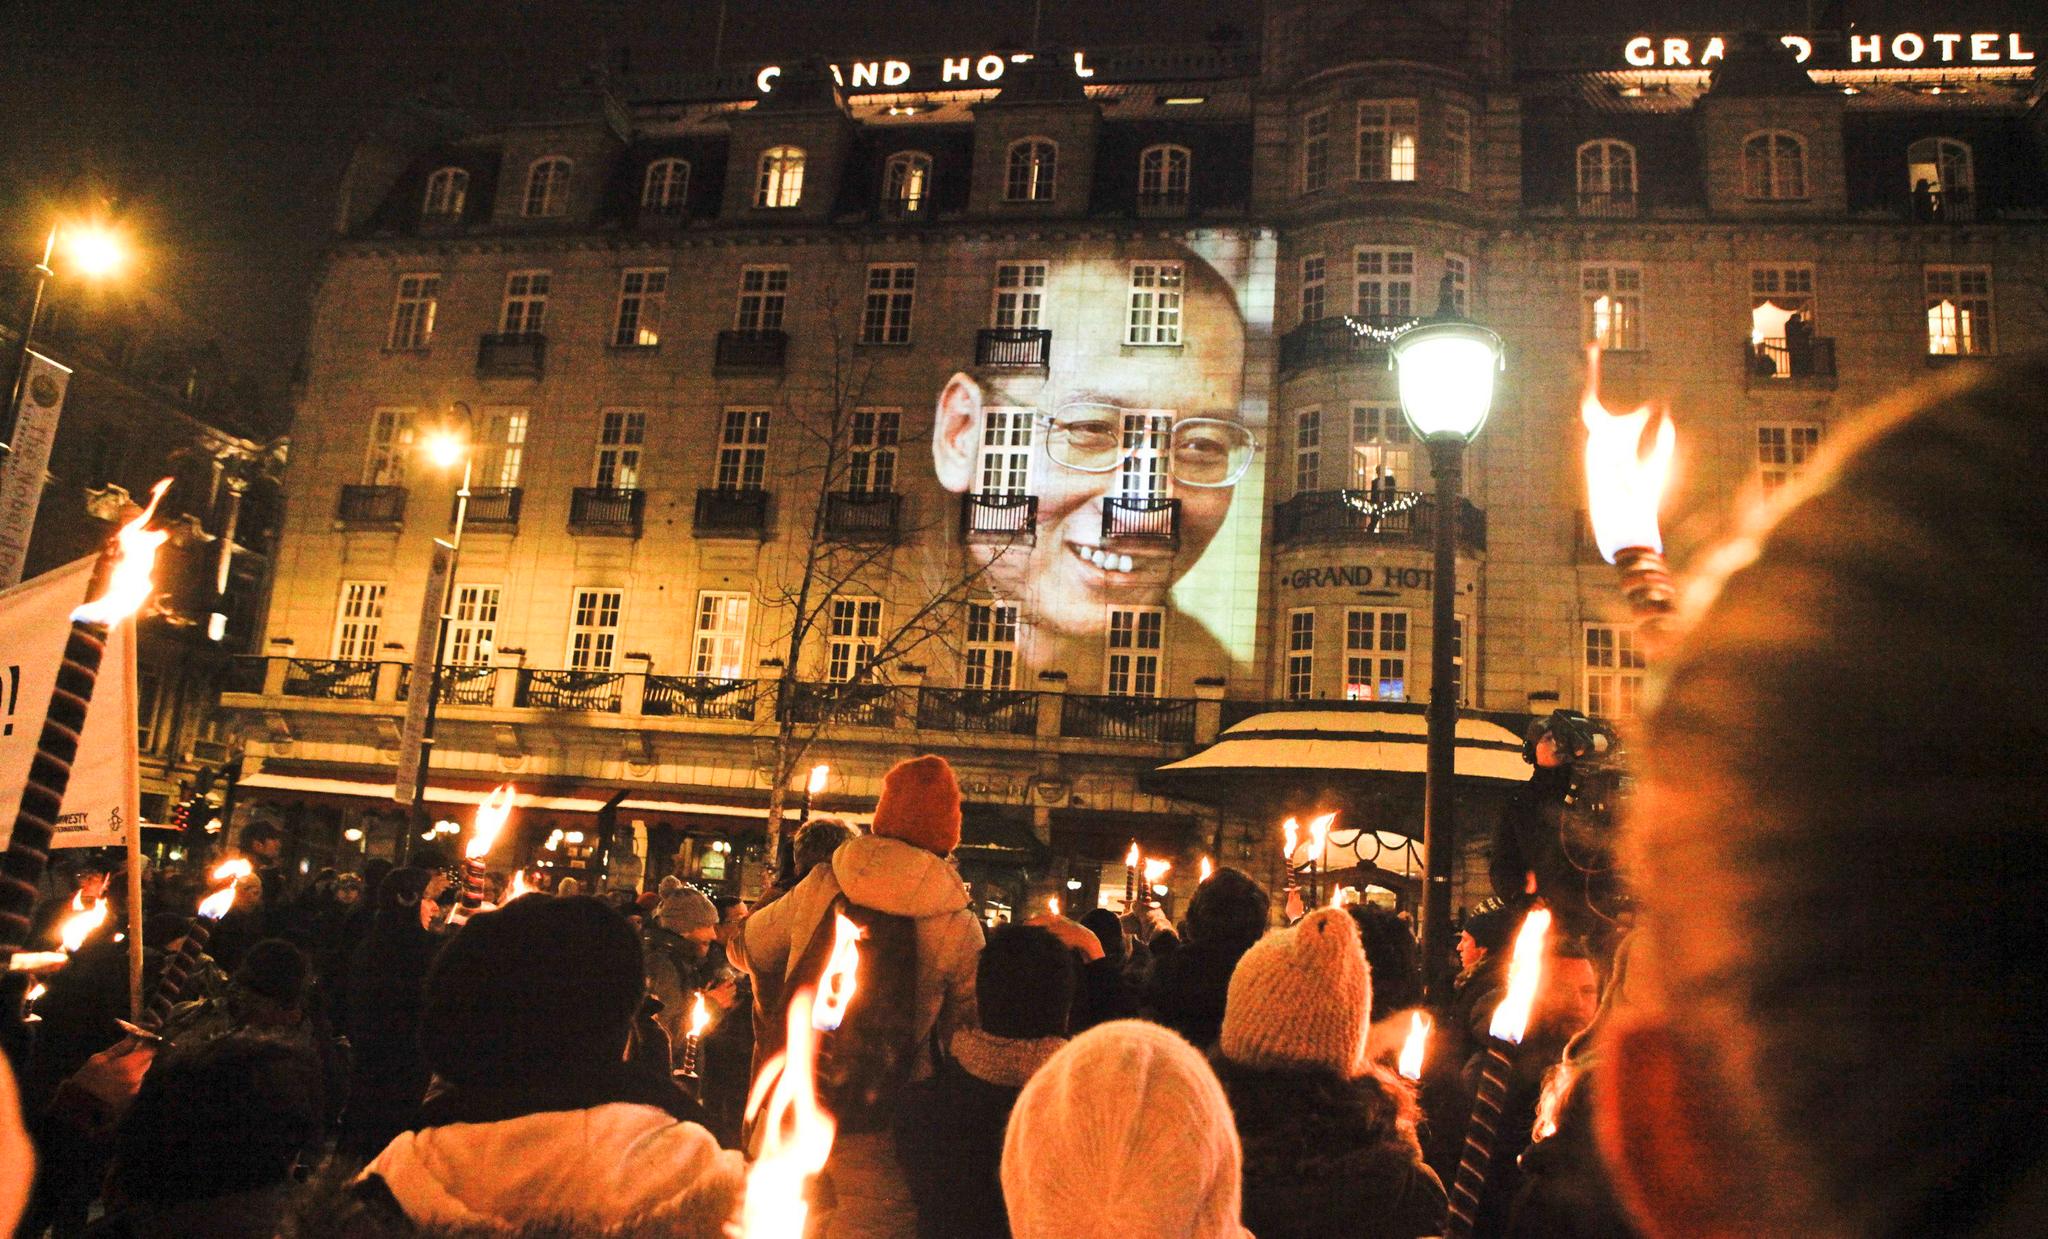 Det er en tradisjon at nobelprisvinneren hedres med et fakkeltog i Oslo sentrum. Her fra 2010, da fredsprisen gikk til kinesiske Liu Xiaobo. Han kjempet for demokrati og menneskerettigheter i Kina. 